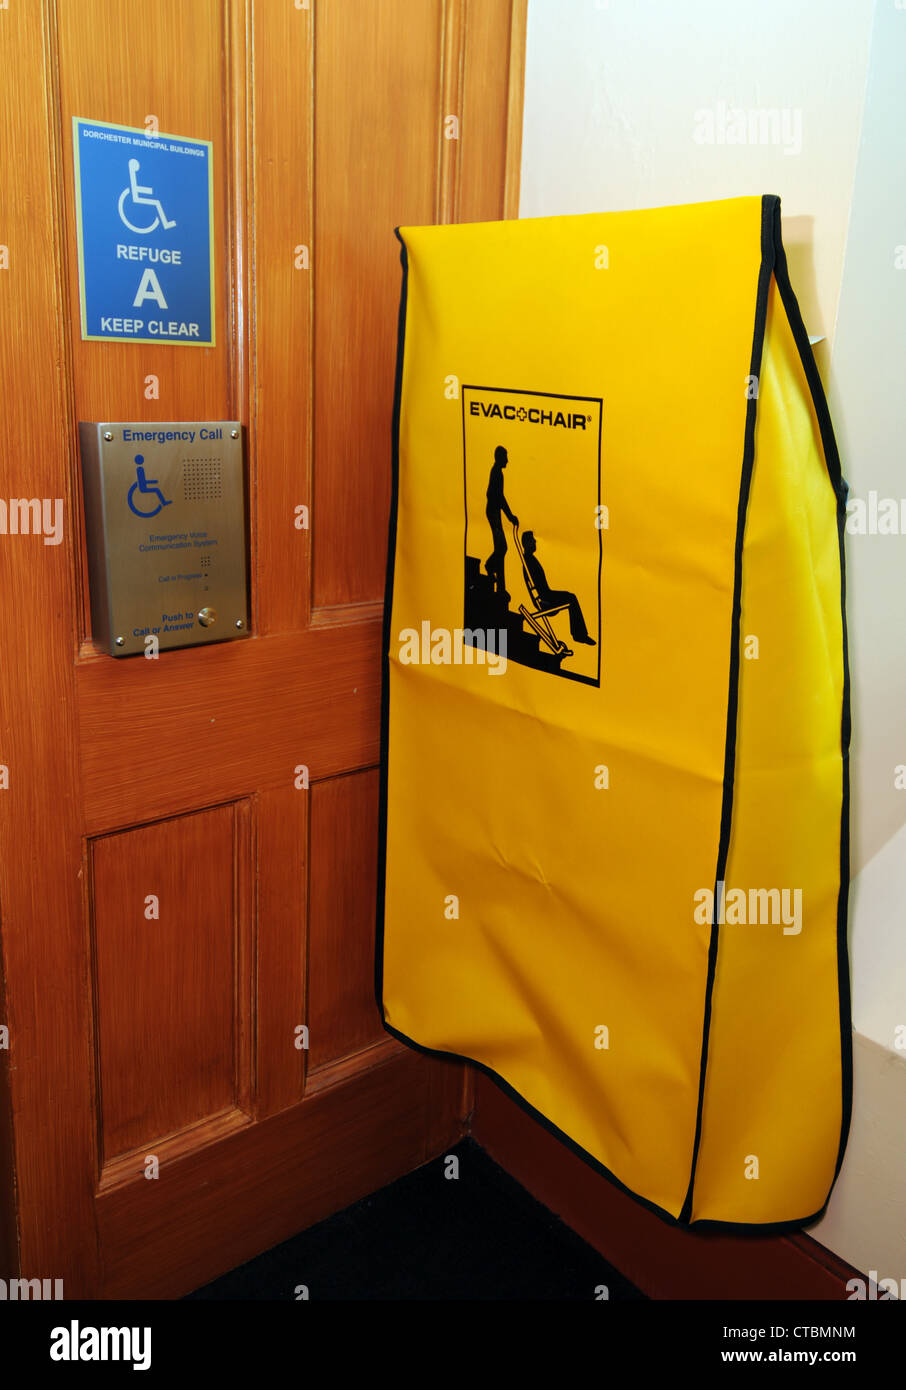 Chaise d'évacuation, l'évacuation d'urgence président utilisé pour prendre les personnes handicapées dans les escaliers Banque D'Images